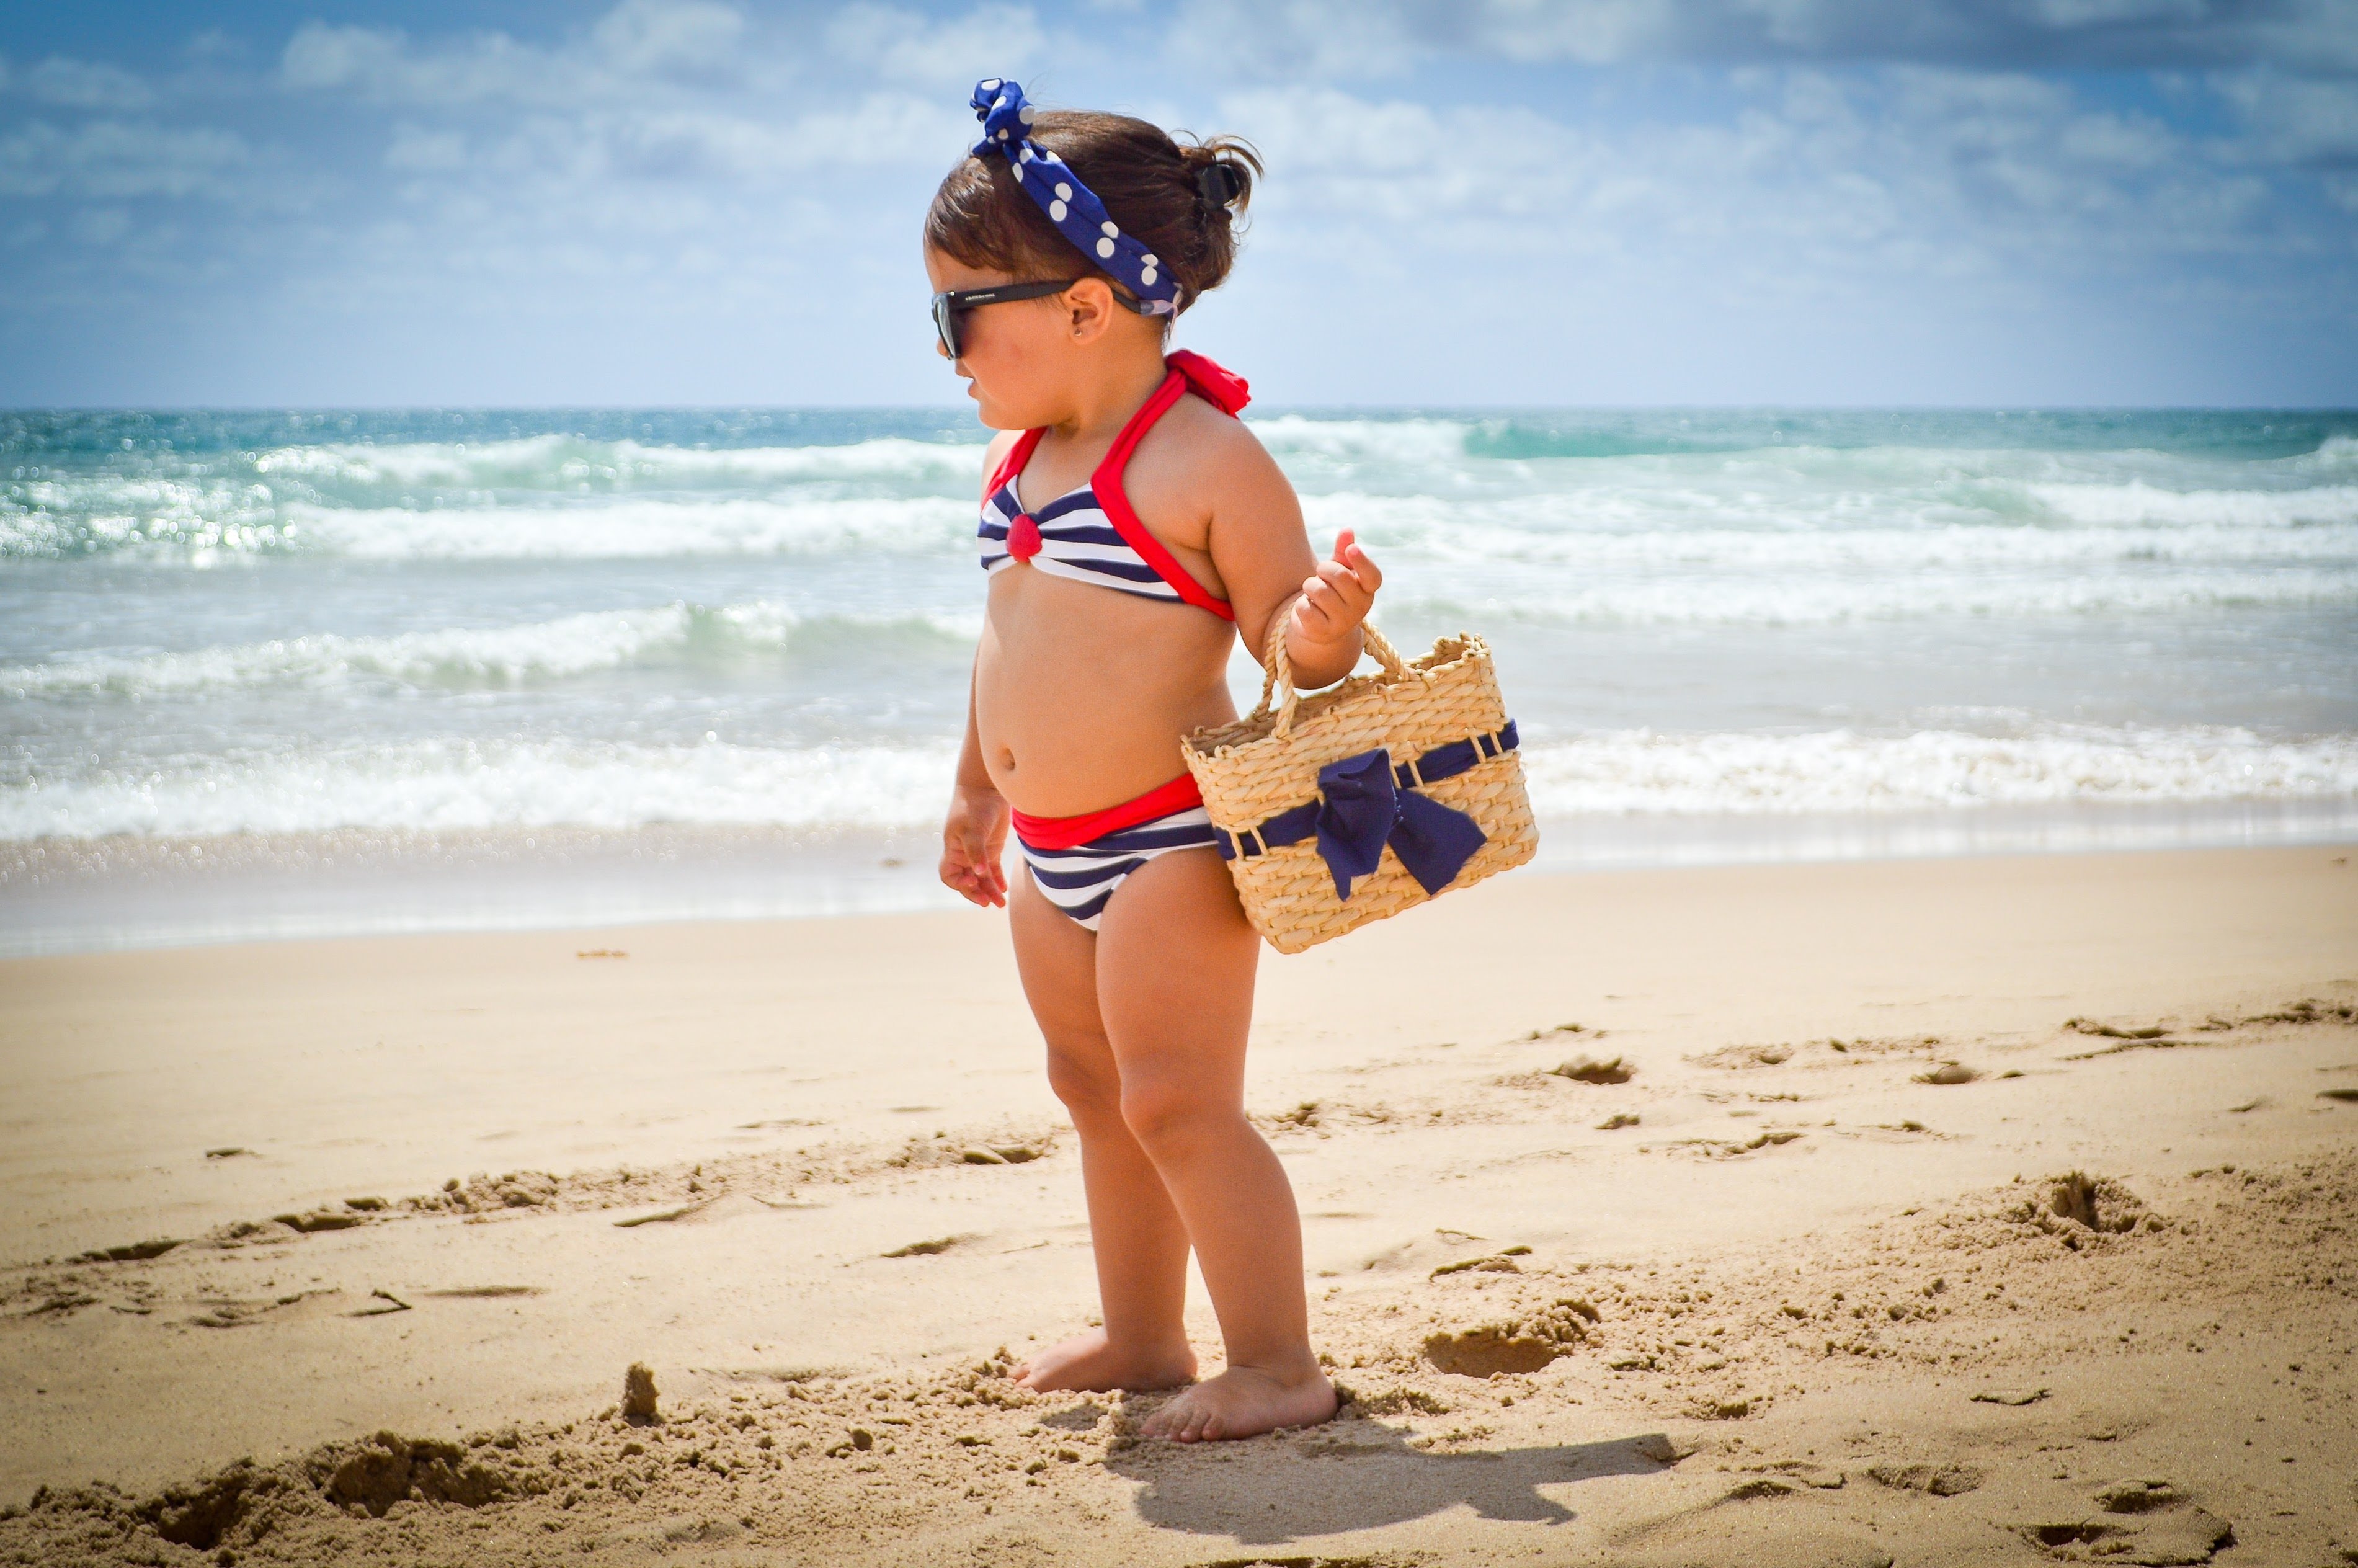 Дети на пляже девочек